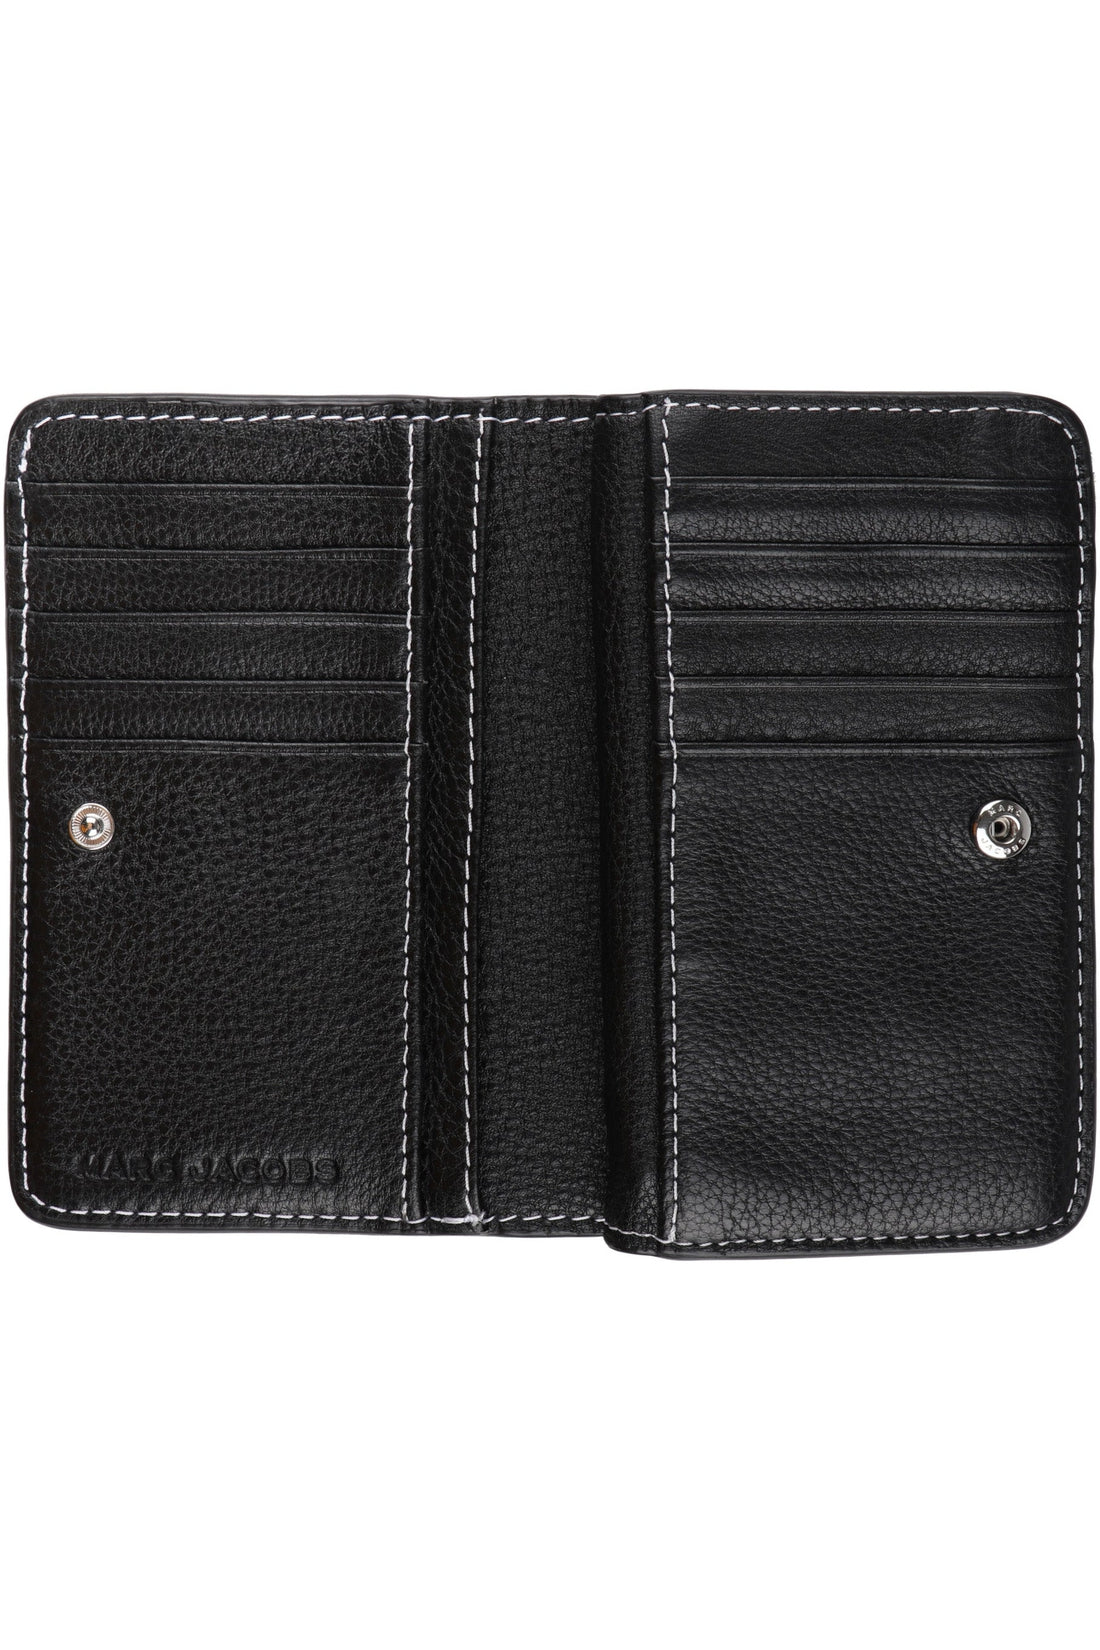 Marc Jacobs-OUTLET-SALE-Leather wallet-ARCHIVIST